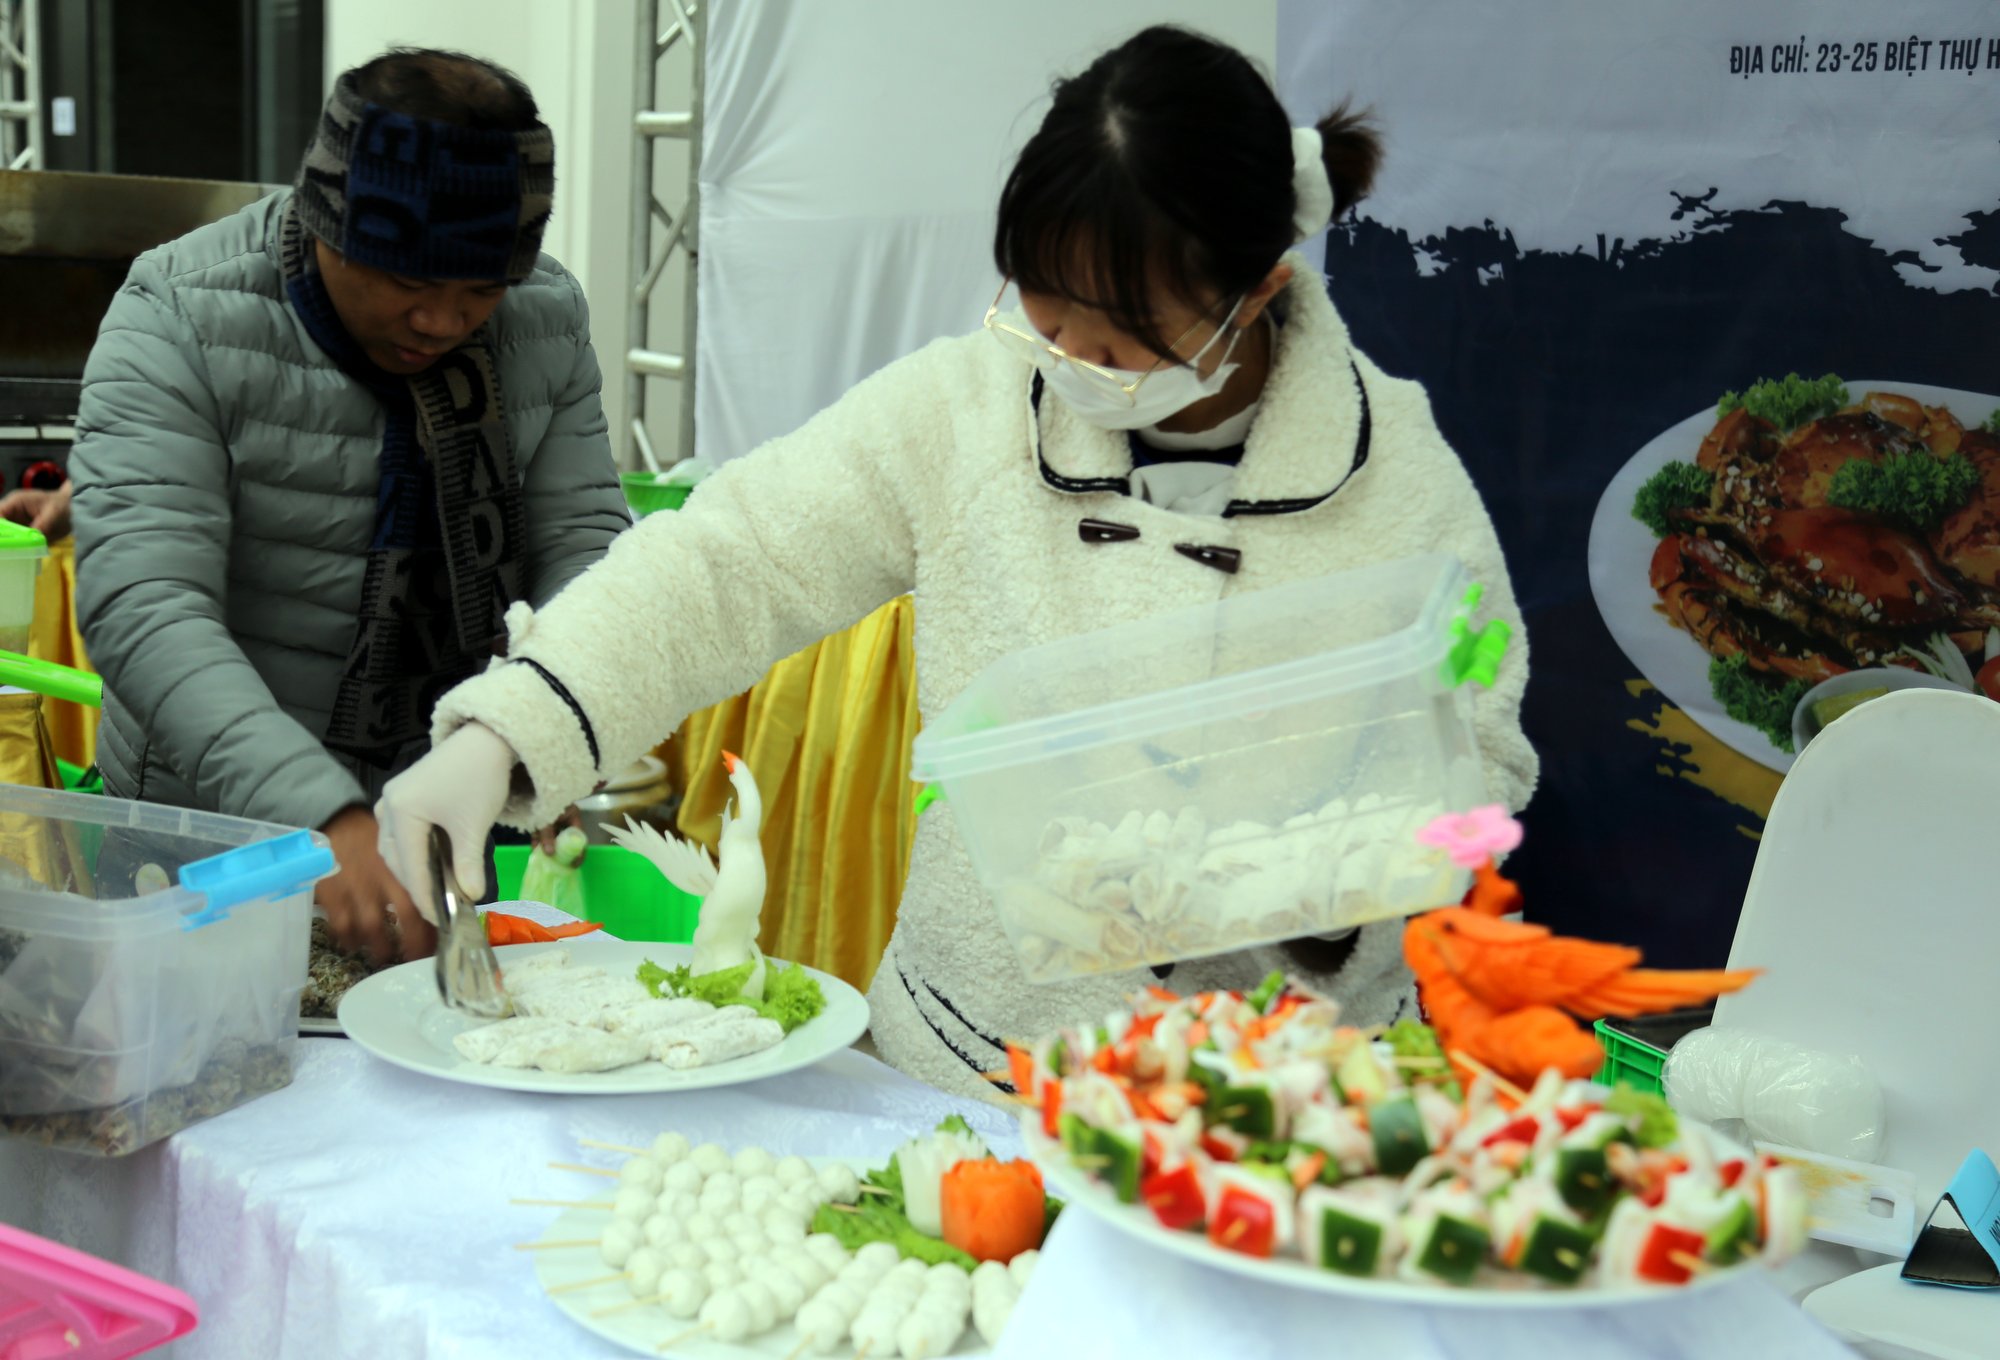 Đầu bếp của nhiều nhà hàng lớn trên địa bàn TP Hạ Long sắp xếp các món ăn vừa ngon miệng, vừa đẹp mắt để giới thiệu tinh hoa ẩm thực Quảng Ninh tới du khách.